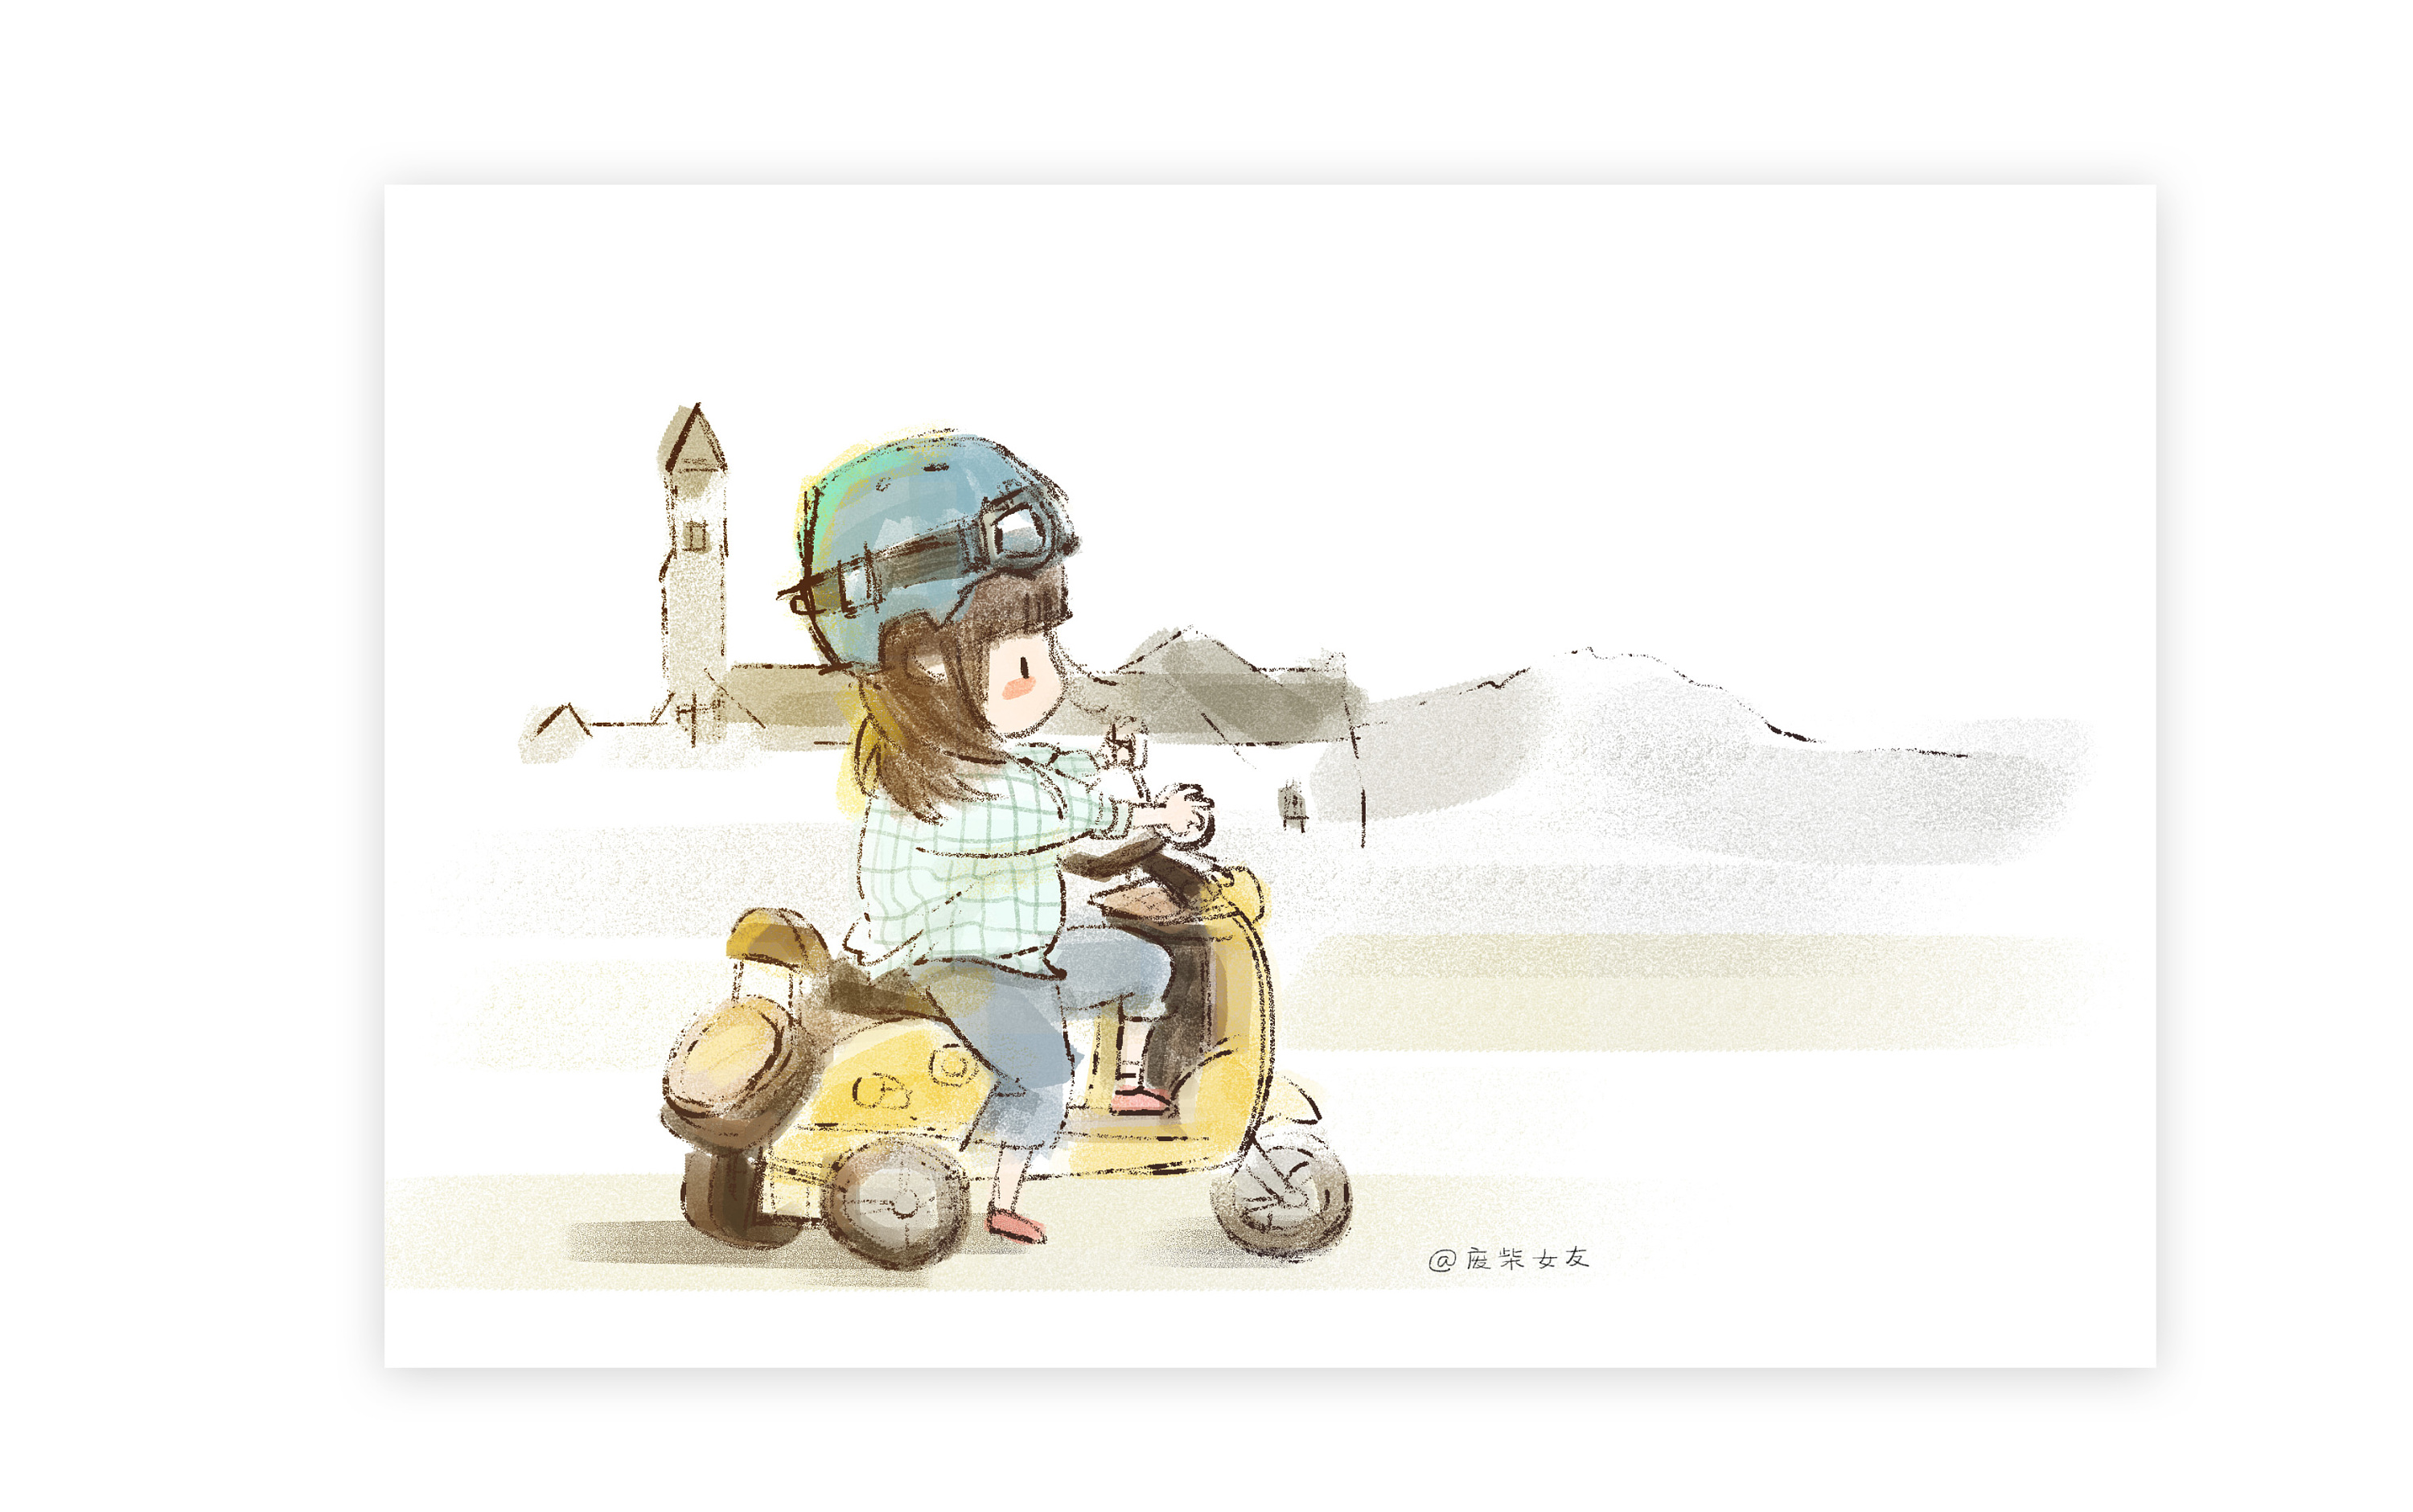 年轻情侣骑摩托车-蓝牛仔影像-中国原创广告影像素材